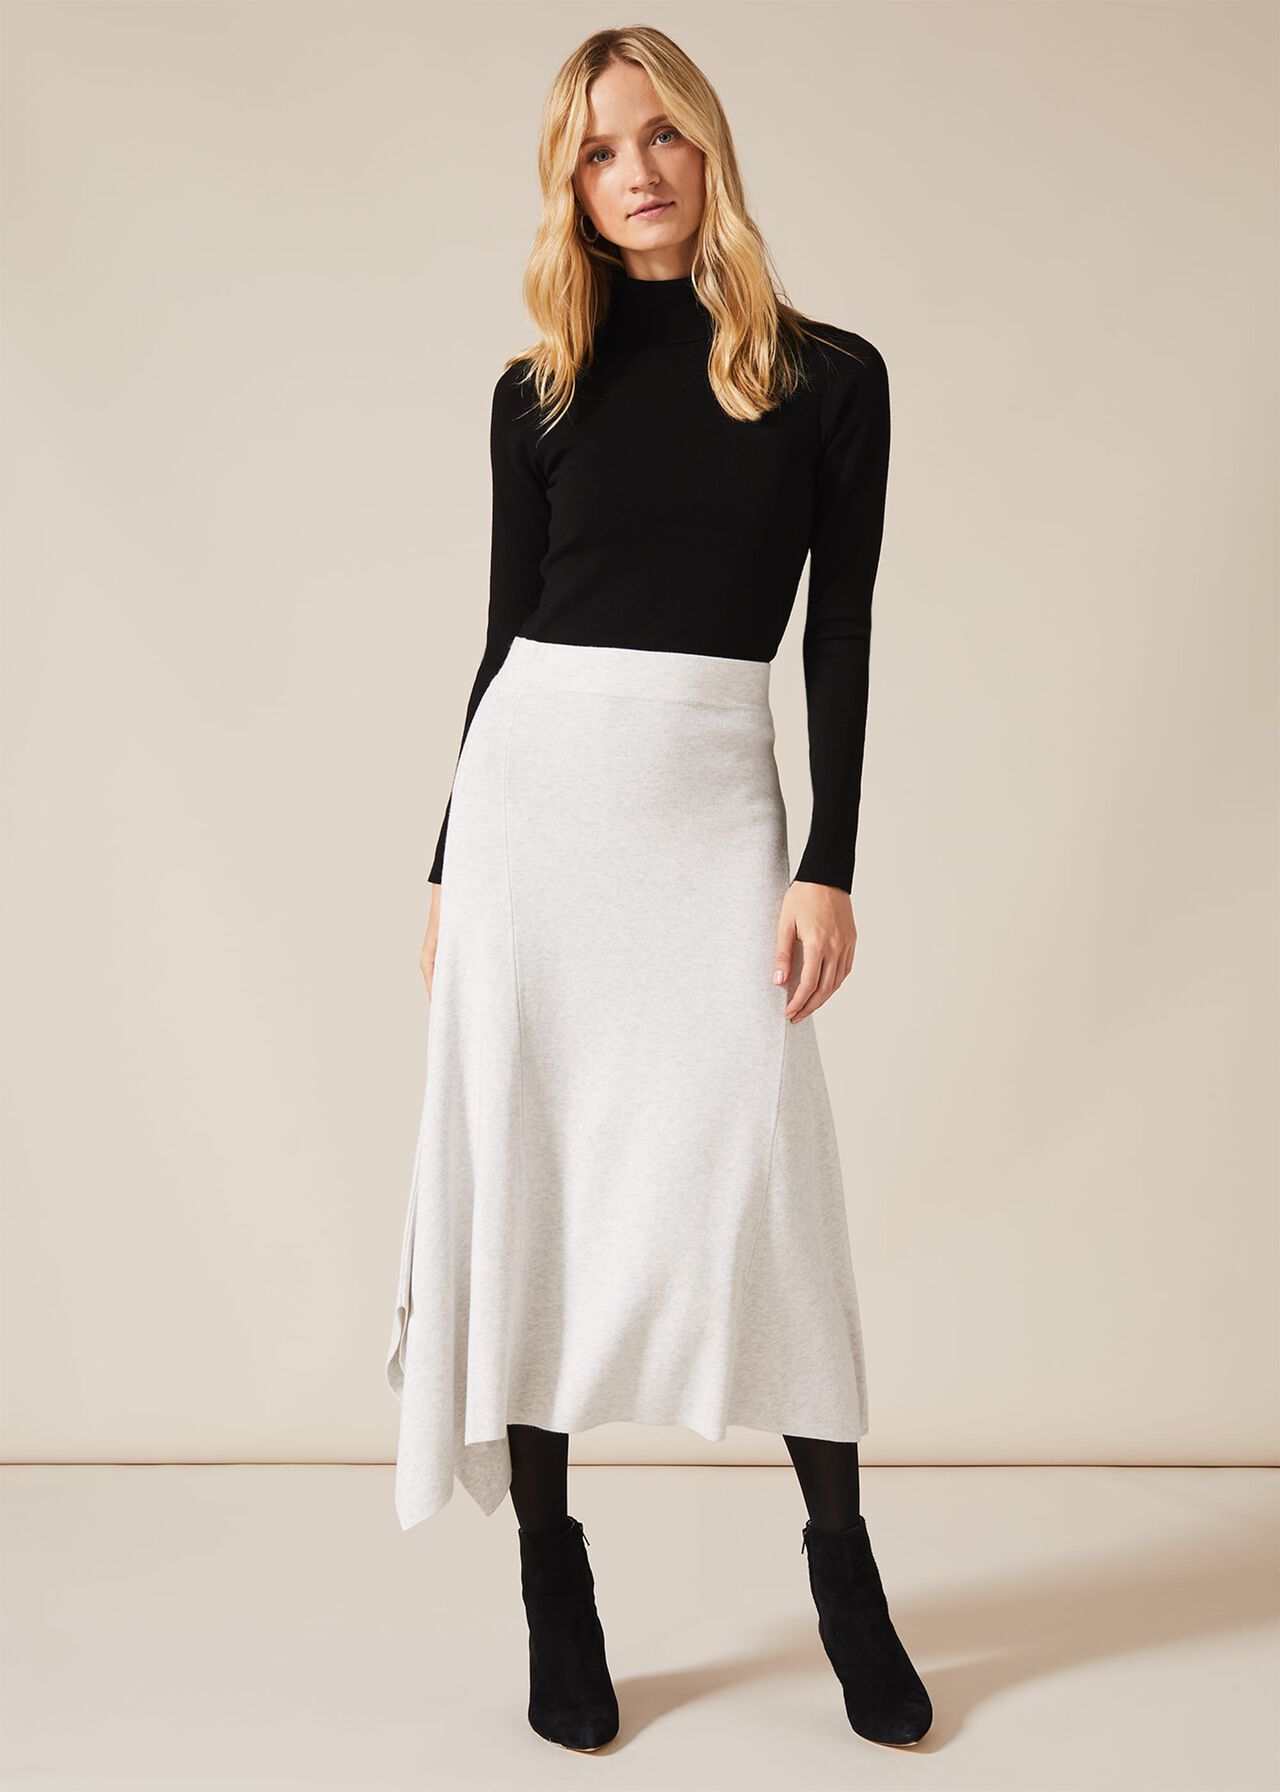 Alexana Asymmetric Skirt